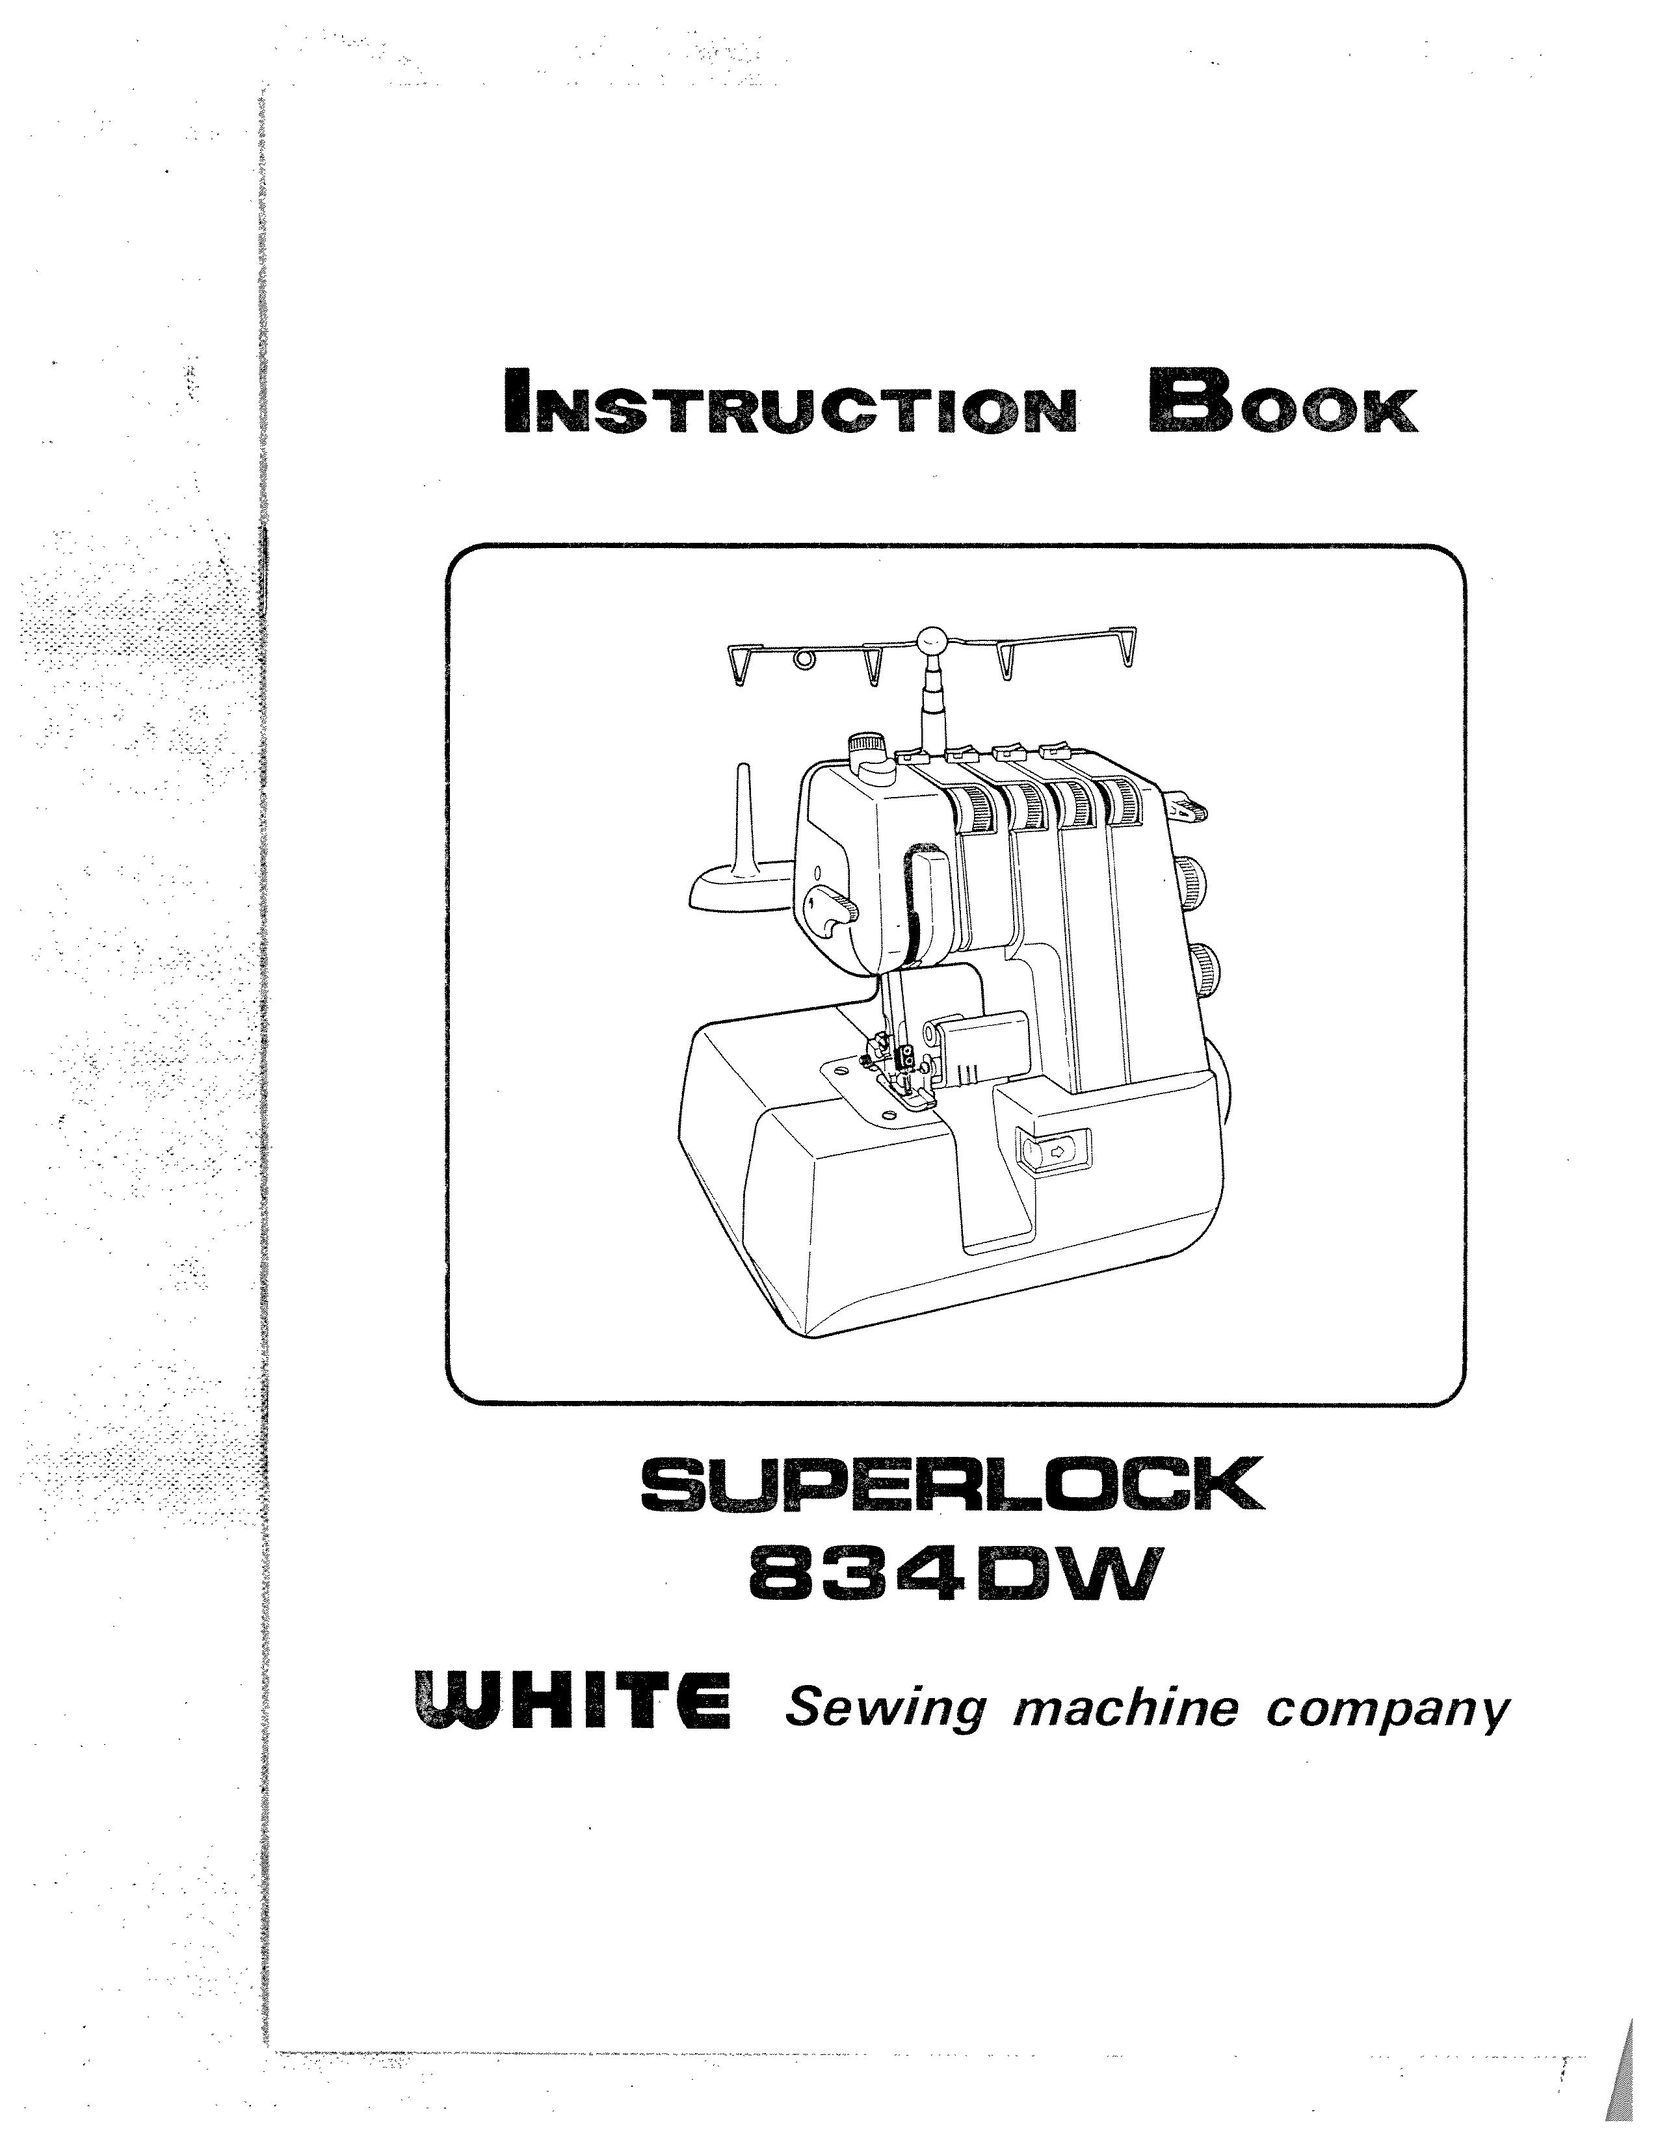 White 834DW Sewing Machine User Manual